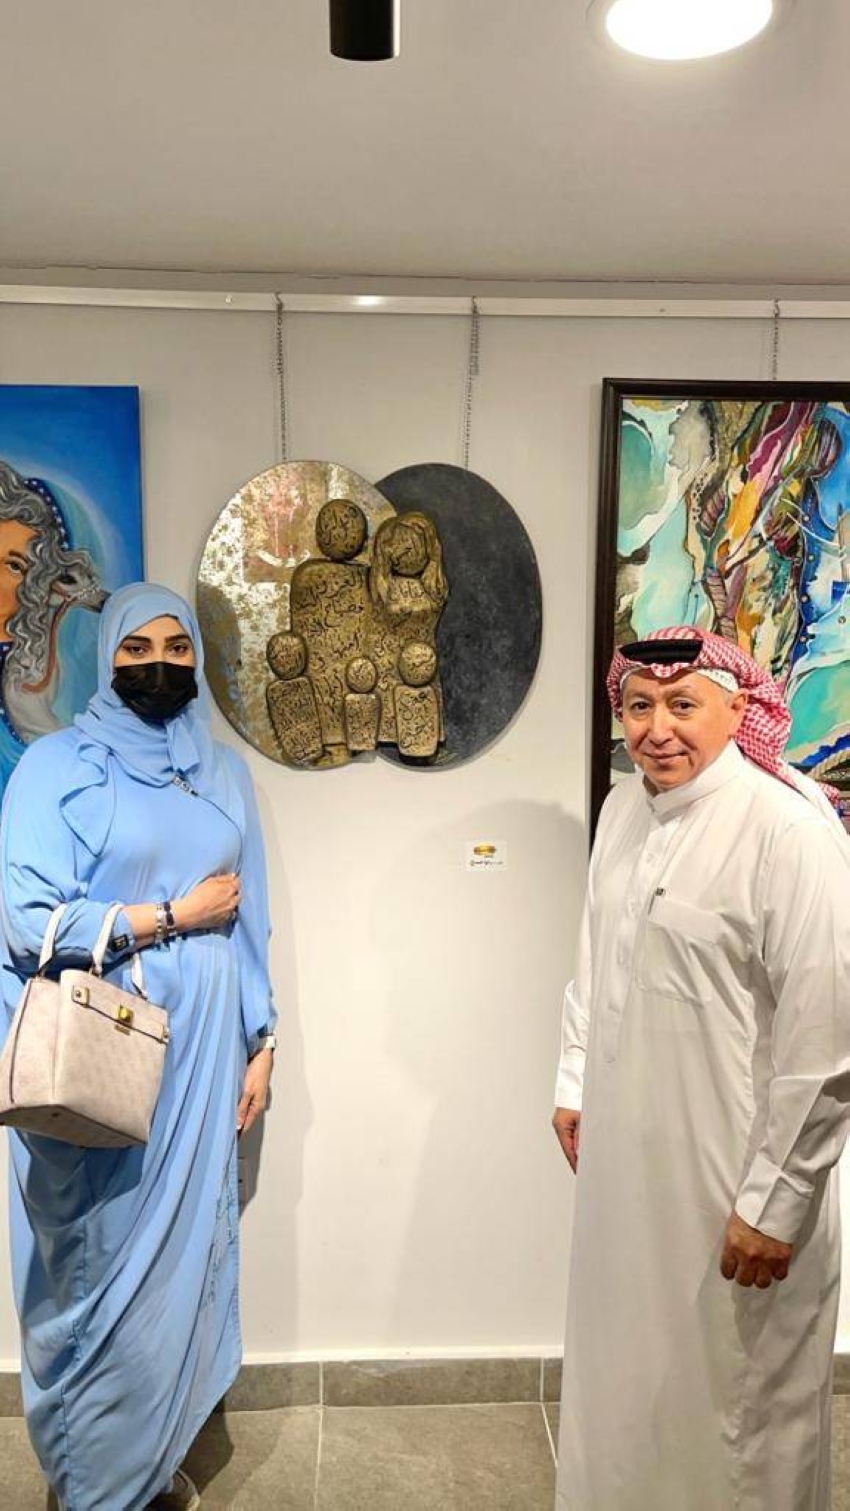 الفنانة داليا السعدي تشرح للزميل سهيل طاشكندي لوحتها الفنية